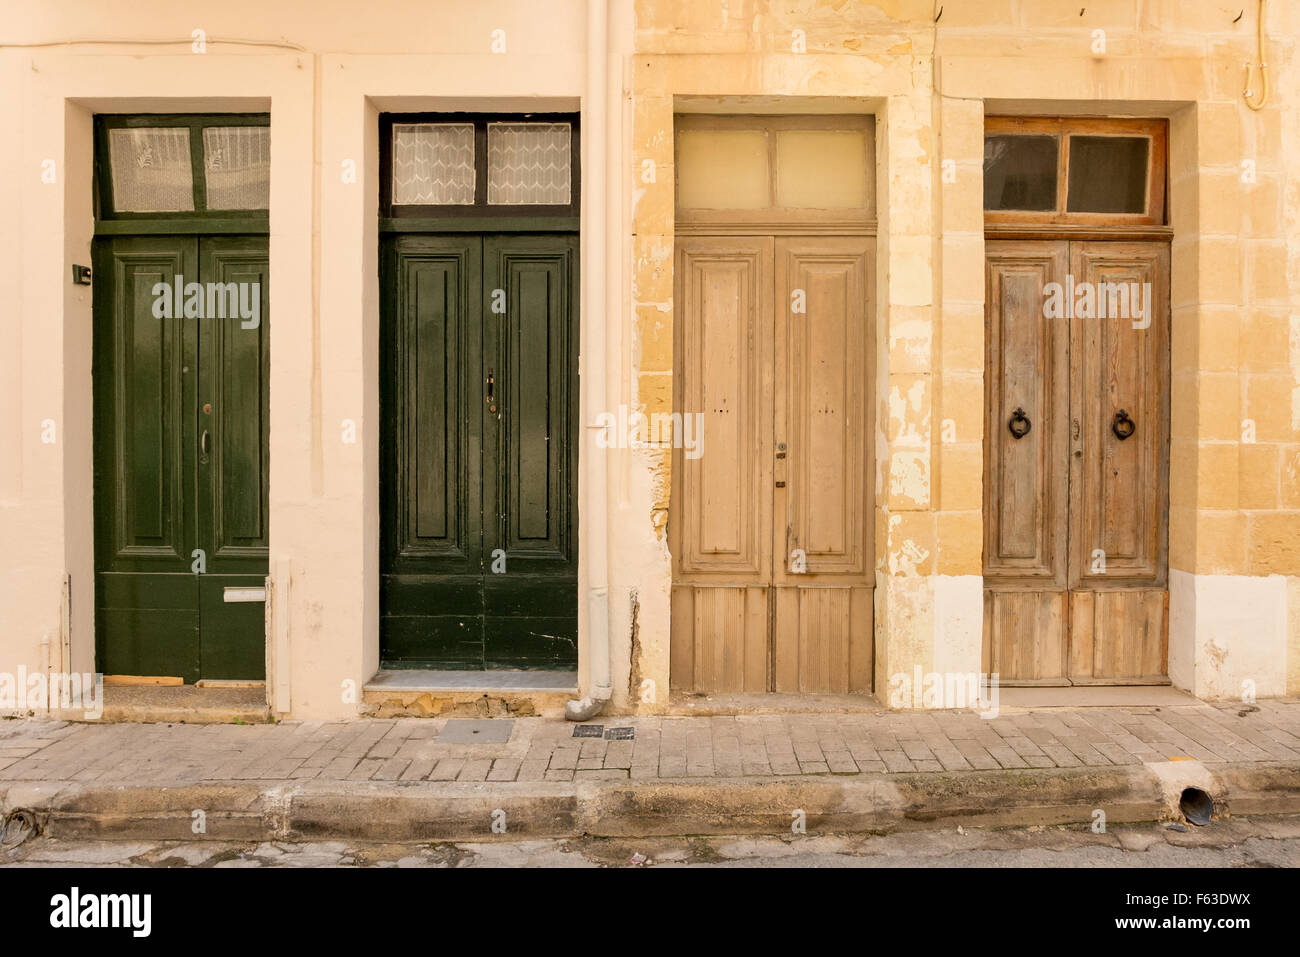 Neighbouring doors in Marsalforn, Gozo, Malta. Stock Photo